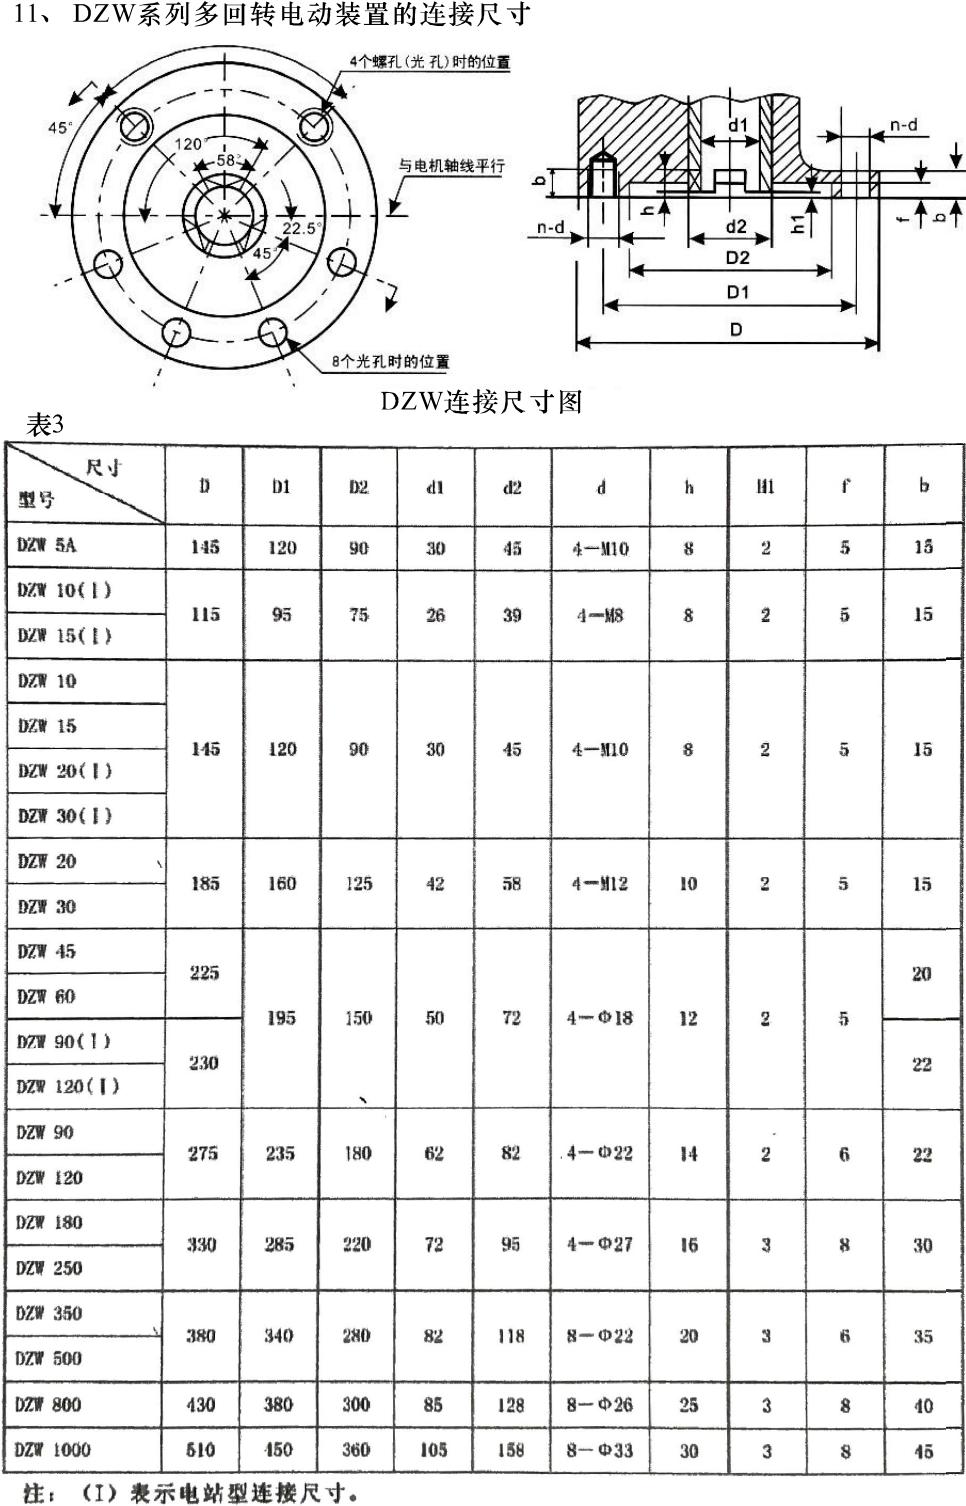 提取自非入侵式DZW型阀门电动装置-常州神州(1)_00.jpg